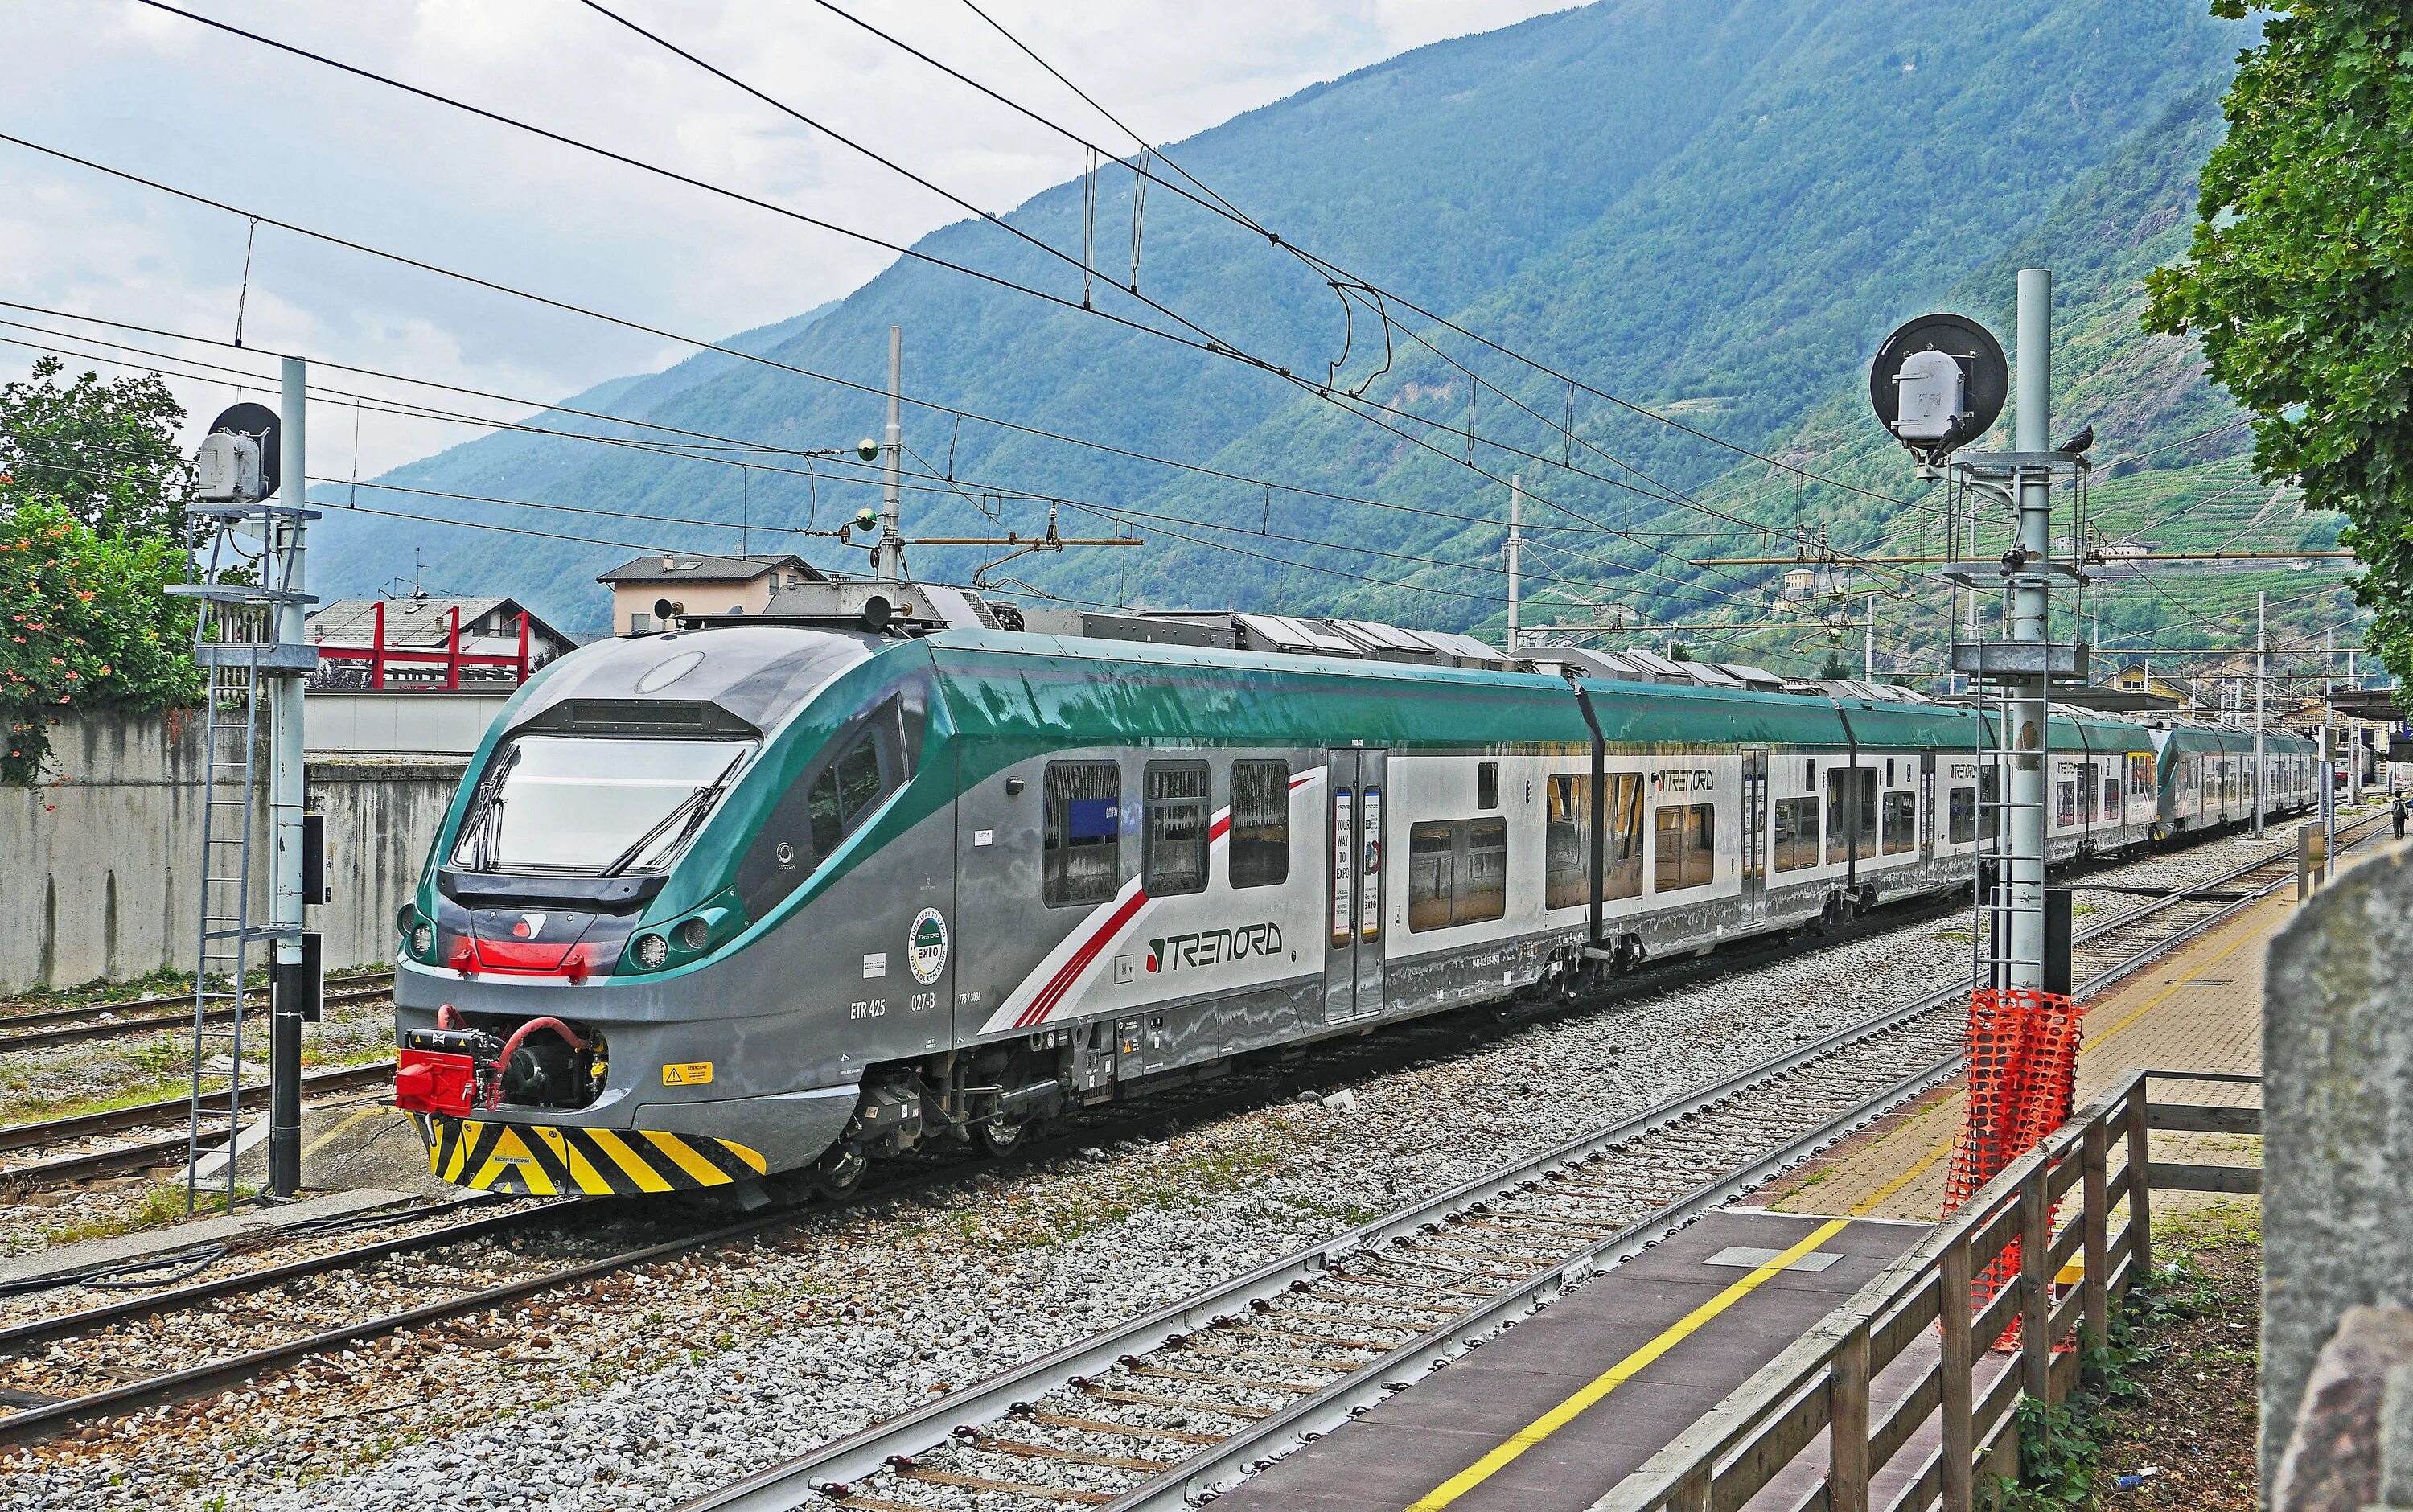 Тирано Италия. Поезд Trenitalia регионале. Итальянские поезда.